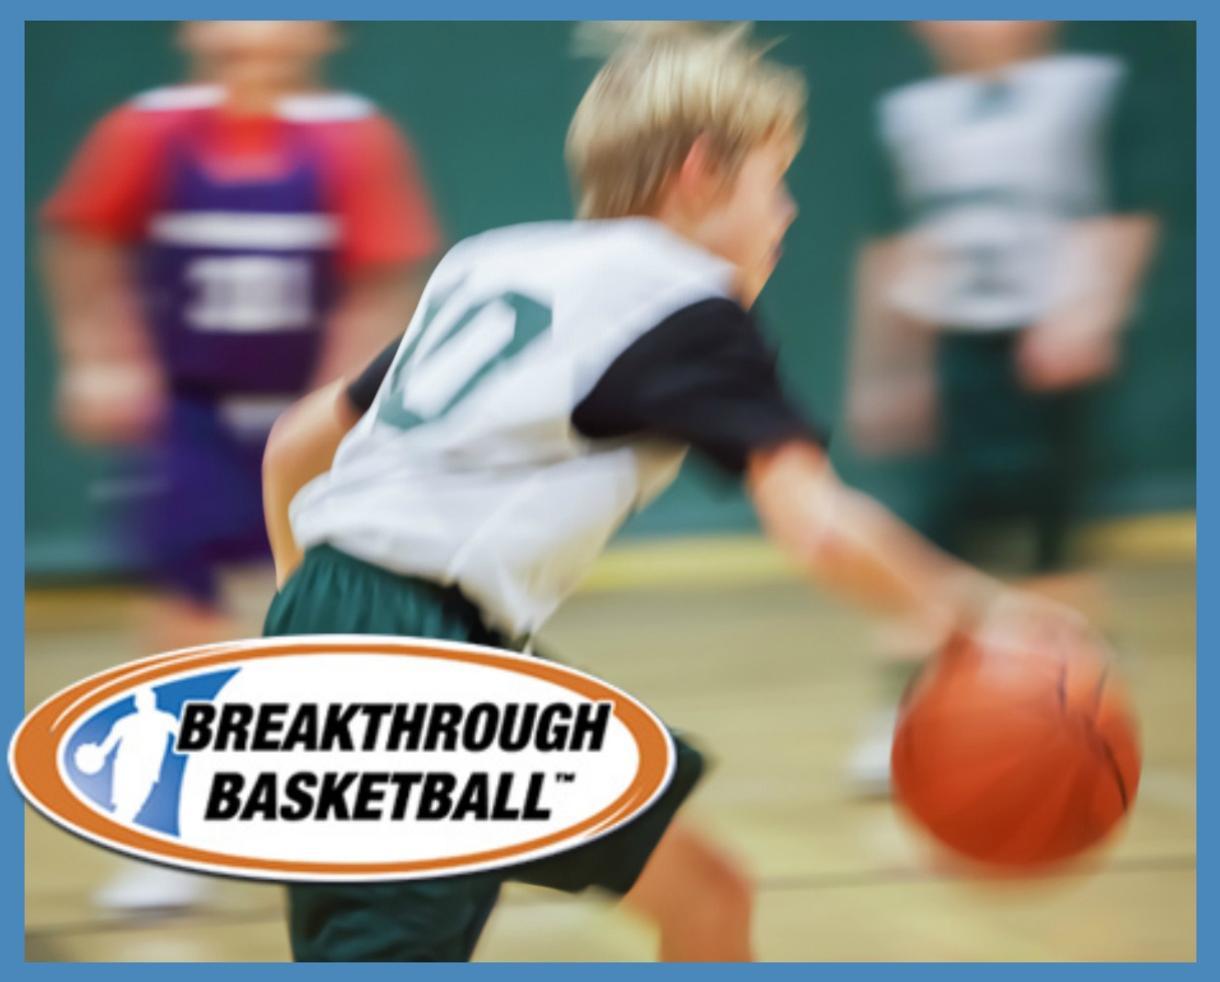 Breakthrough Basketball Logo - Deal: $for Breakthrough Basketball Camp for 4th Graders